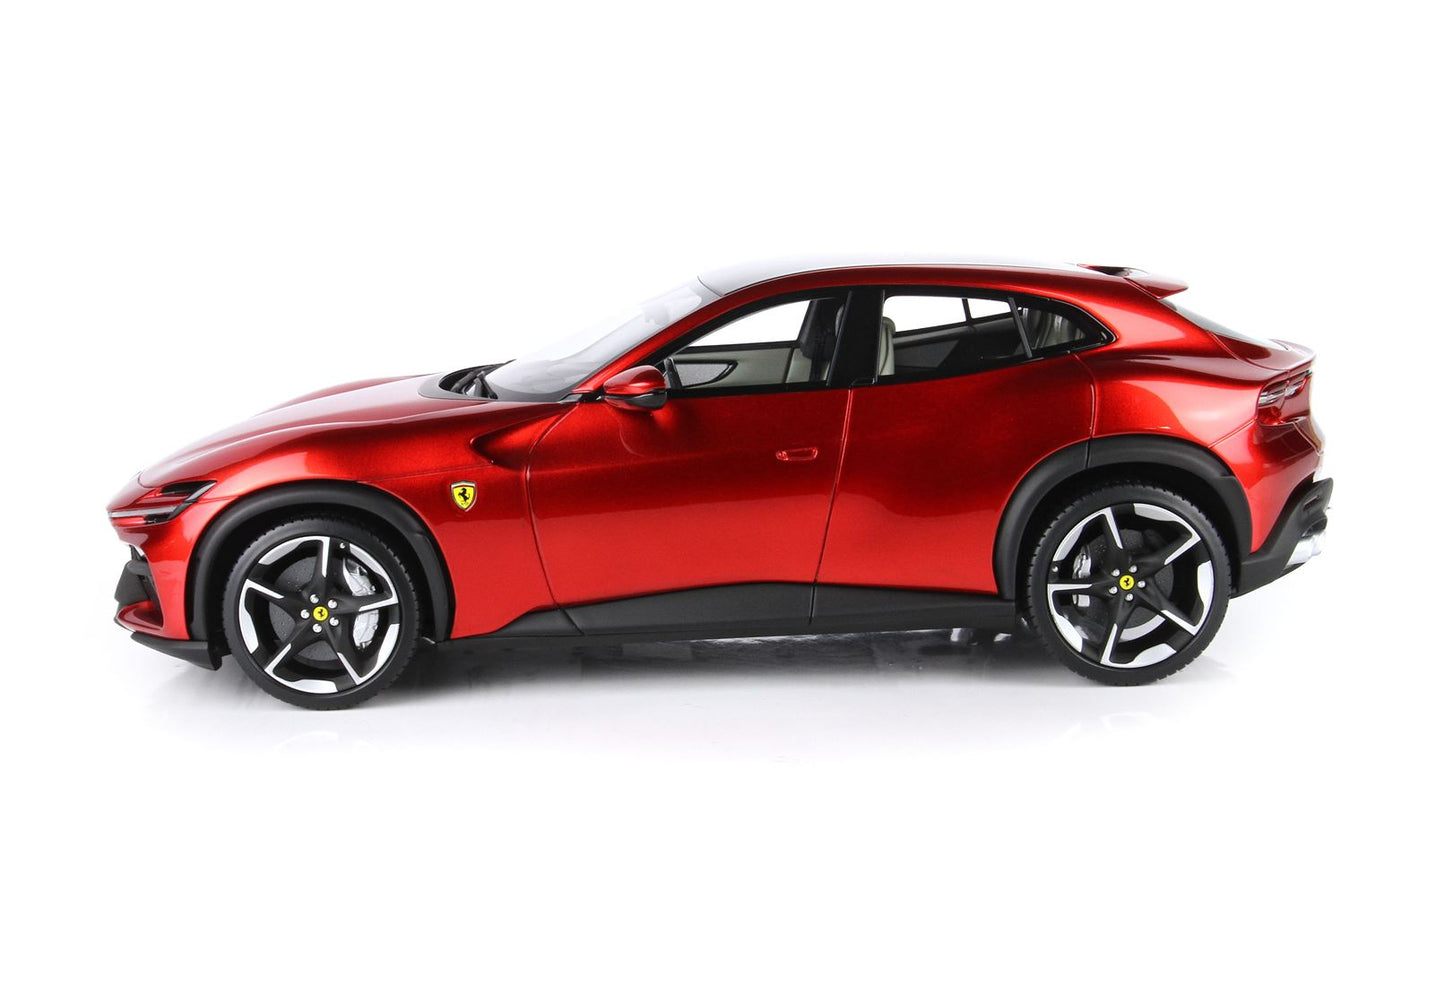 BBR-MODELS - 1/18 - Ferrari Purosangue Rosso Portofino Metallizzato con Vetrinetta